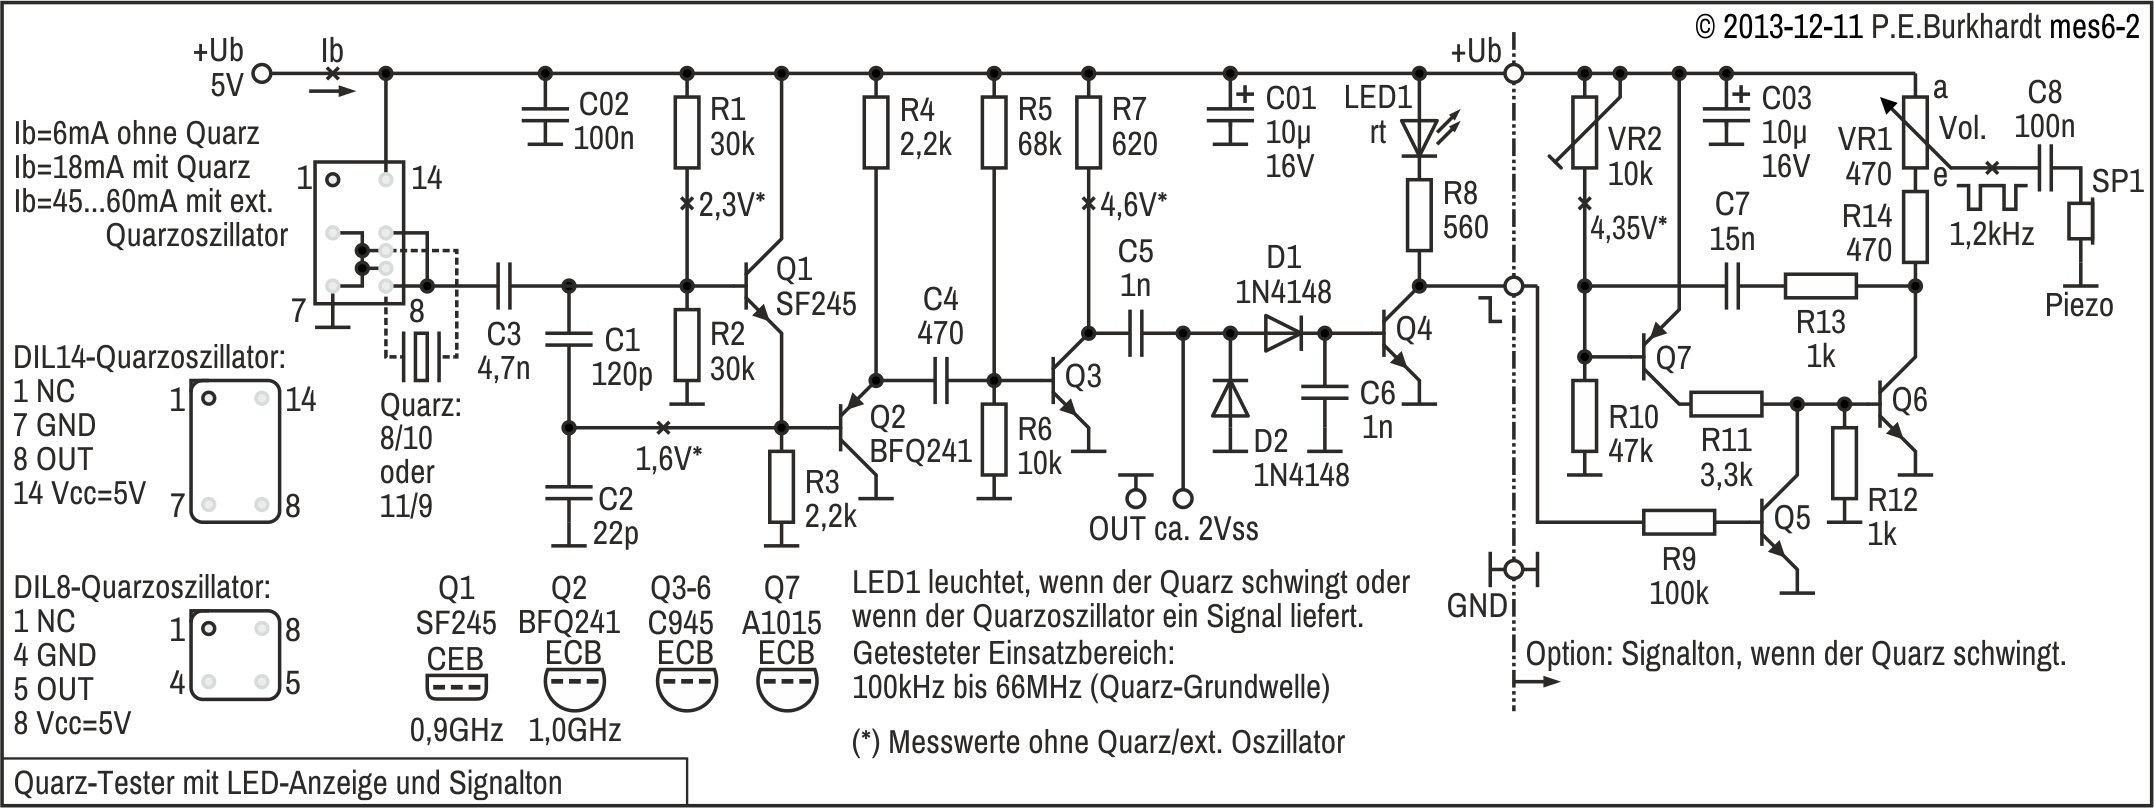 Quarz-Tester mit LED-Anzeige und Signalton